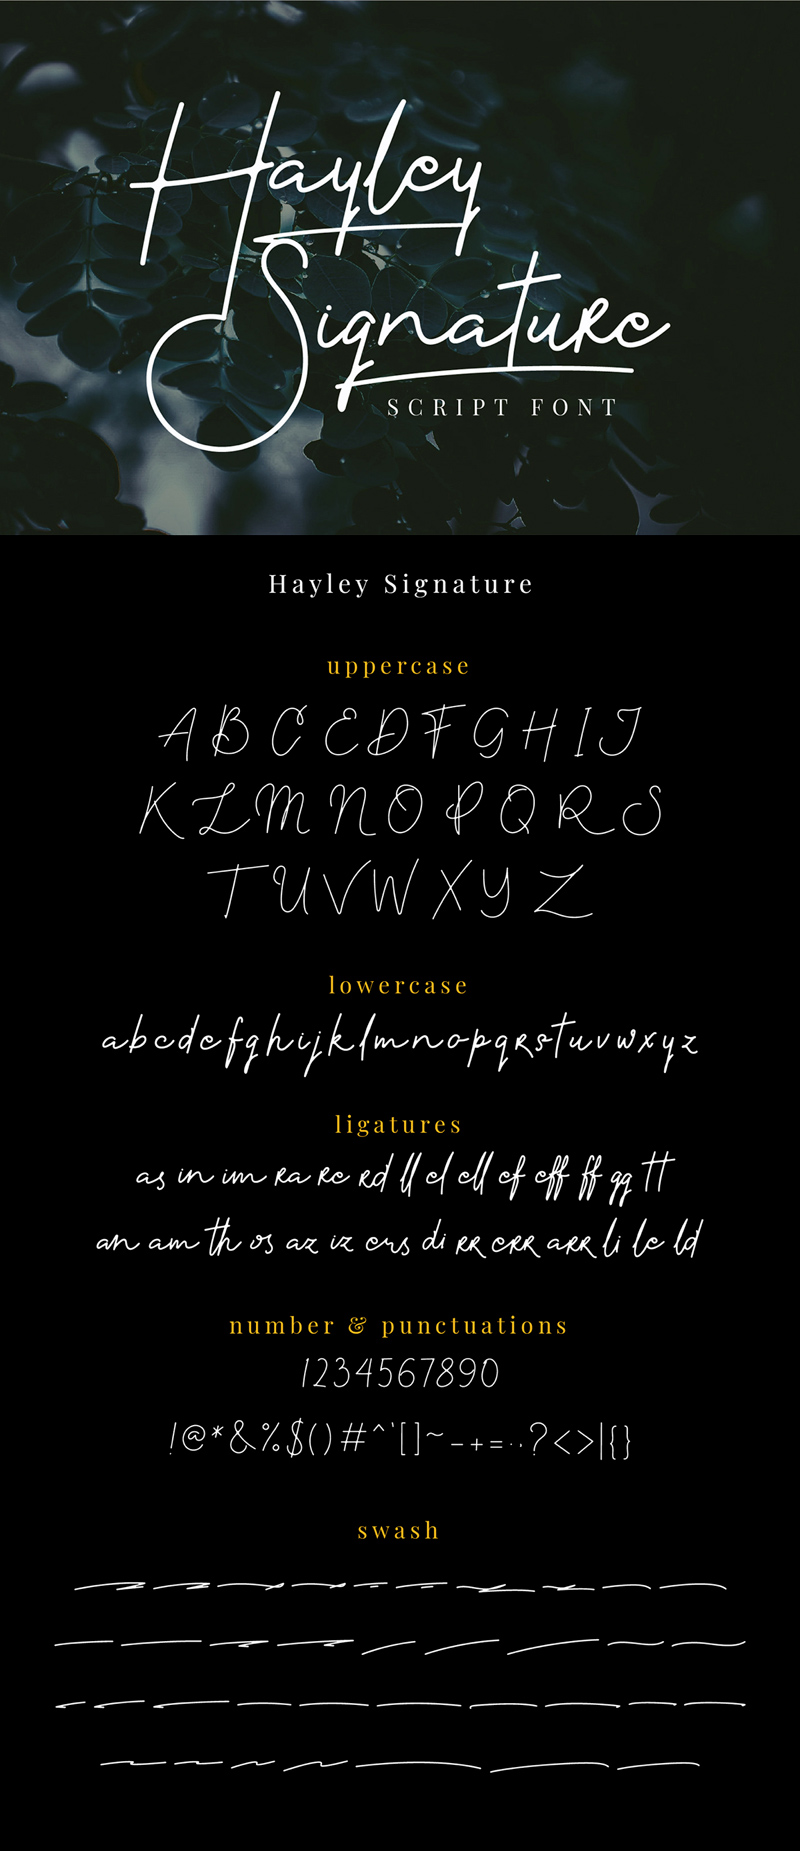 Hayley Signature Schriftart - kostenlose Schriftart